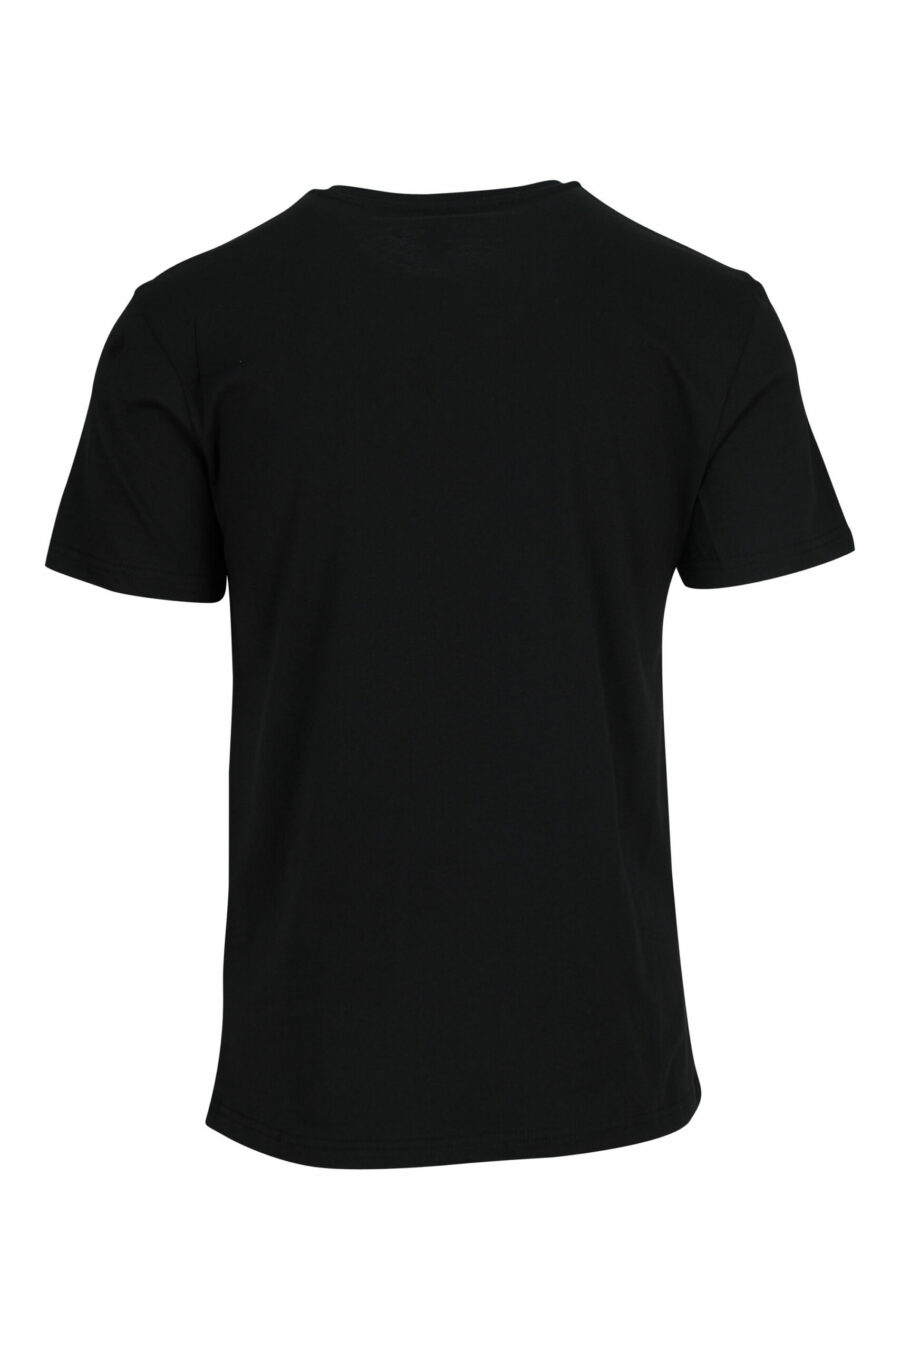 Camiseta negra con minilogo multicolor - 667113672588 1 scaled